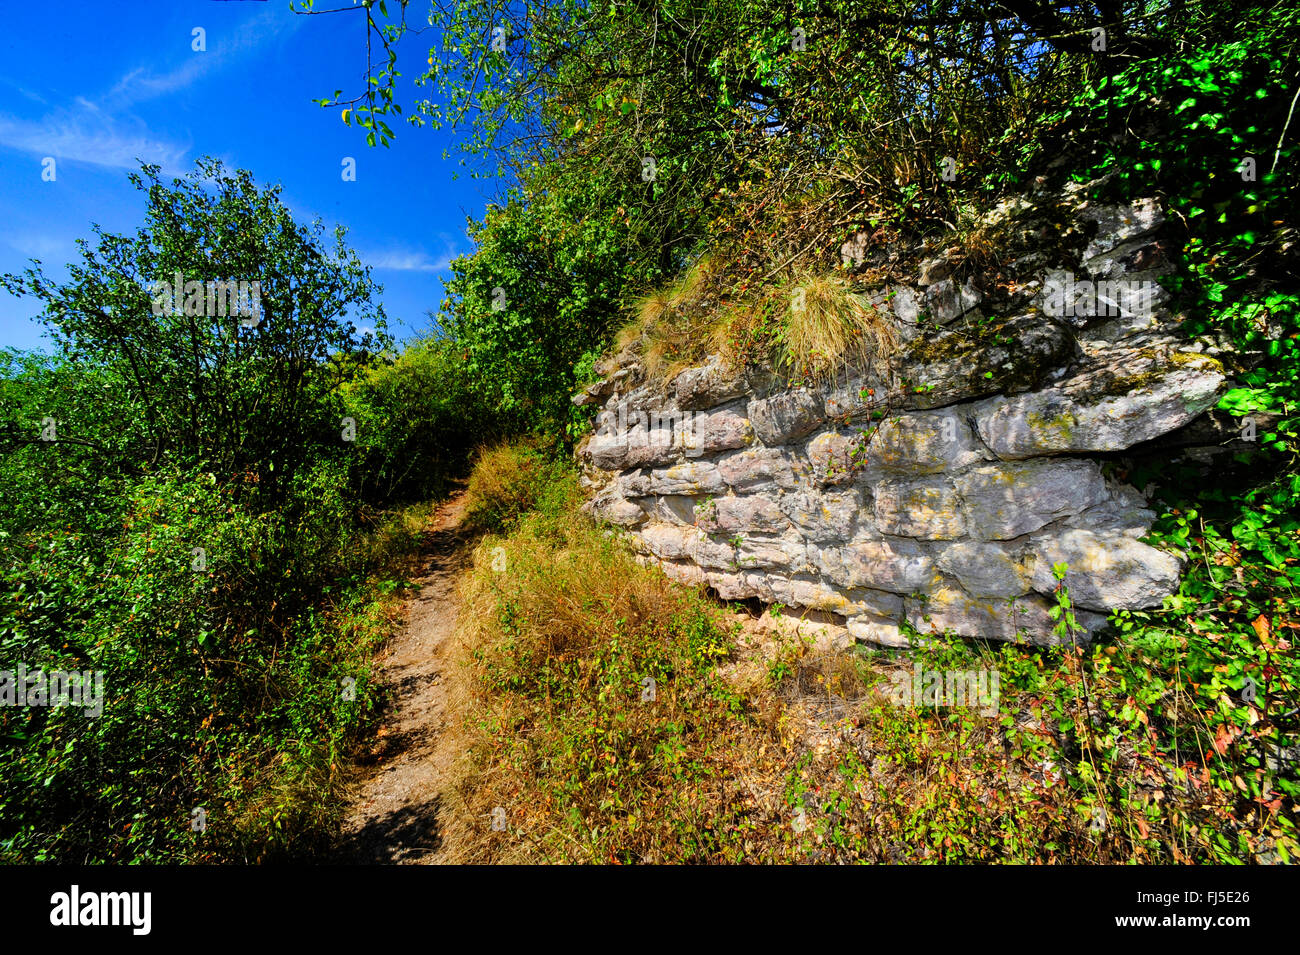 Naturstein Wand in das Nahe Tal, Lebensraum für Reptilien, Deutschland, Rheinland-Pfalz, Bad Kreuznach Stockfoto